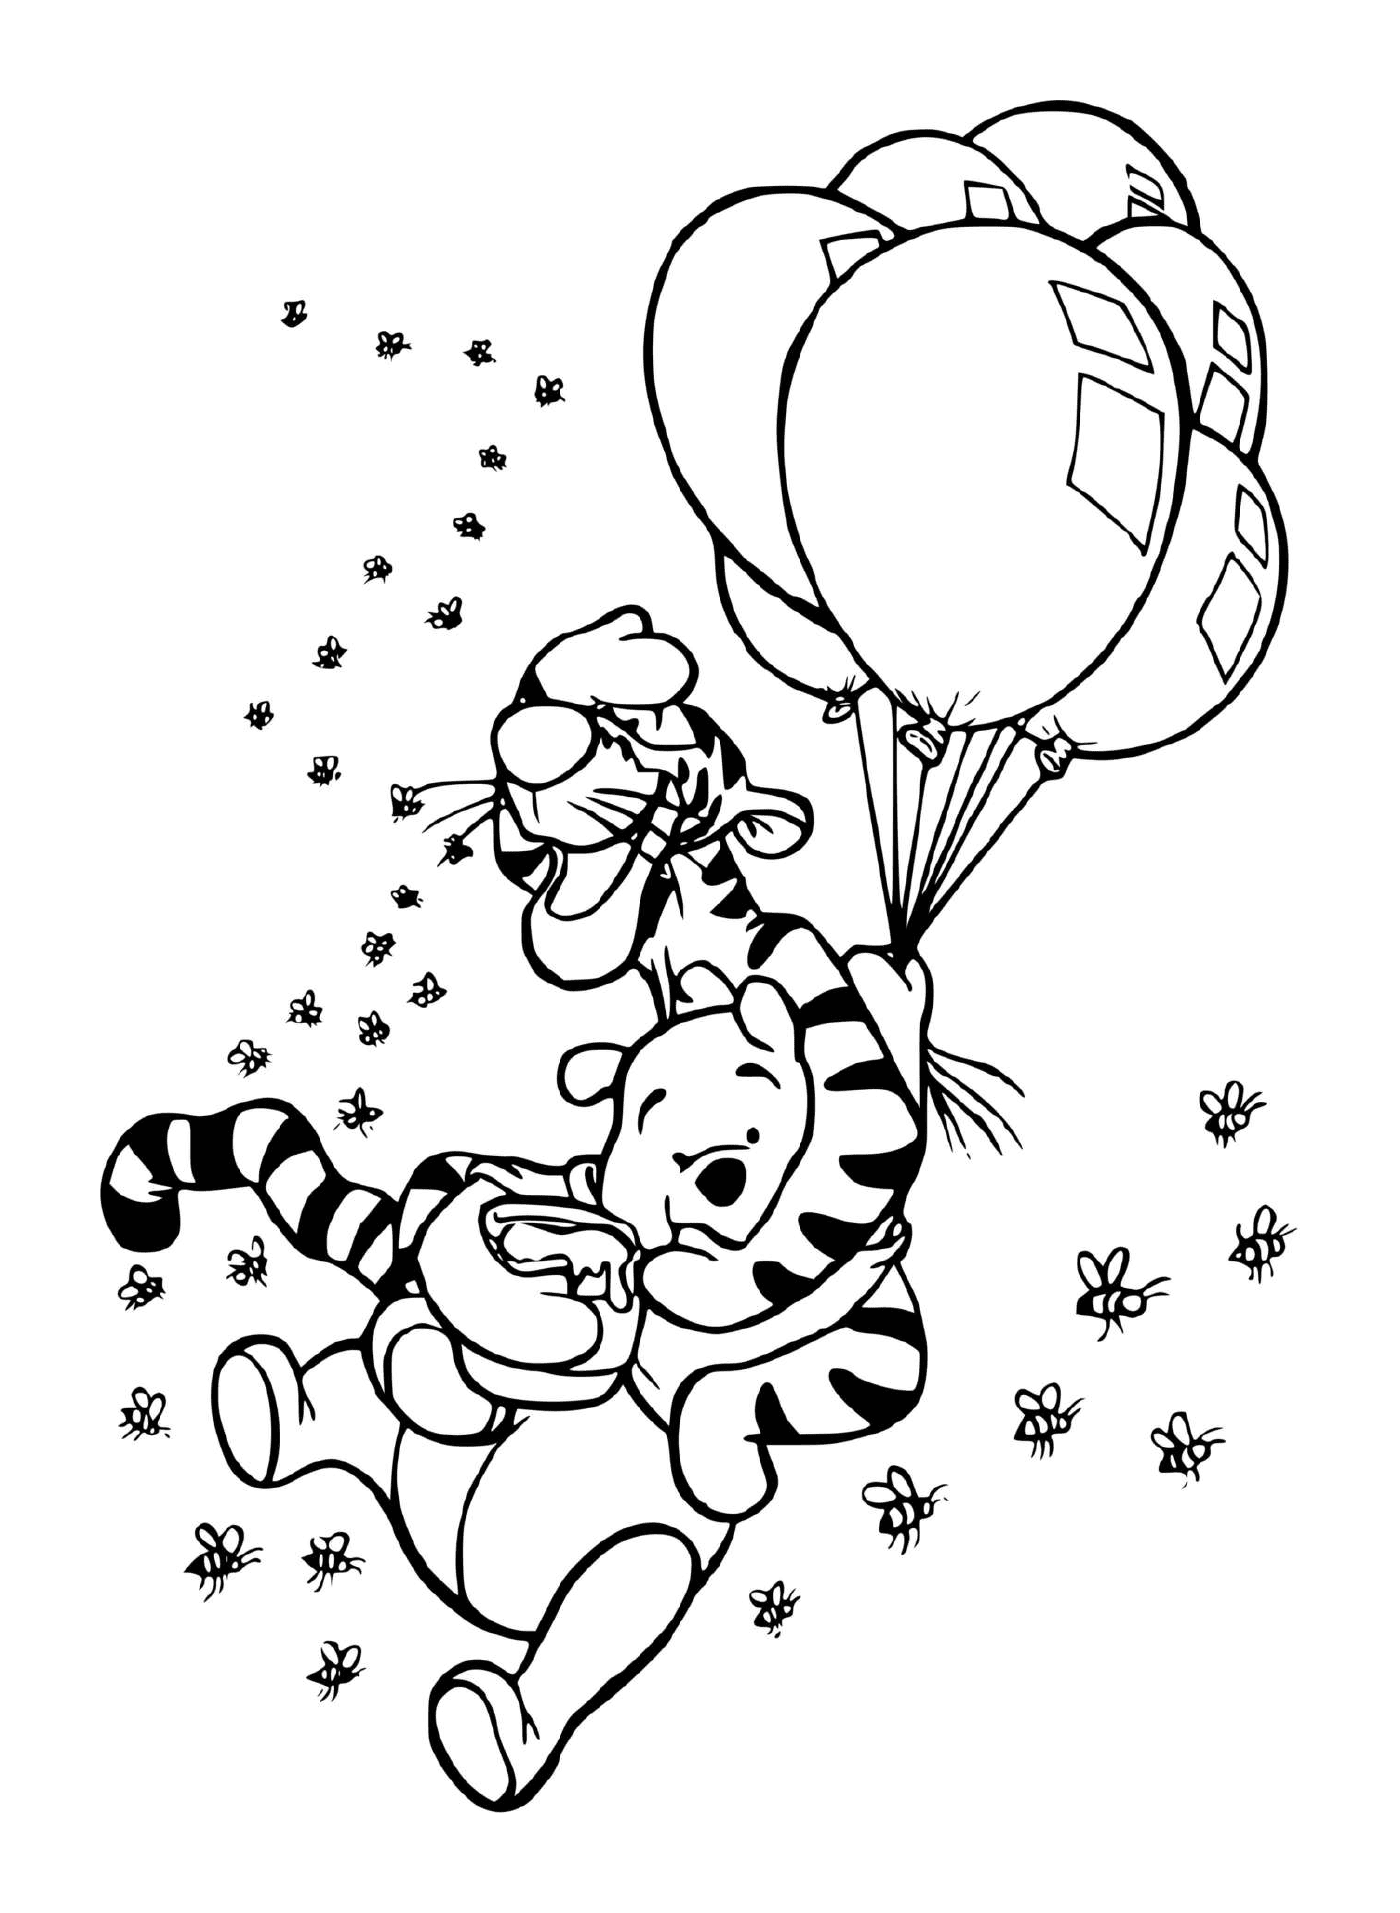  Tigrou e Winnie no ar com balões e um pote de mel 